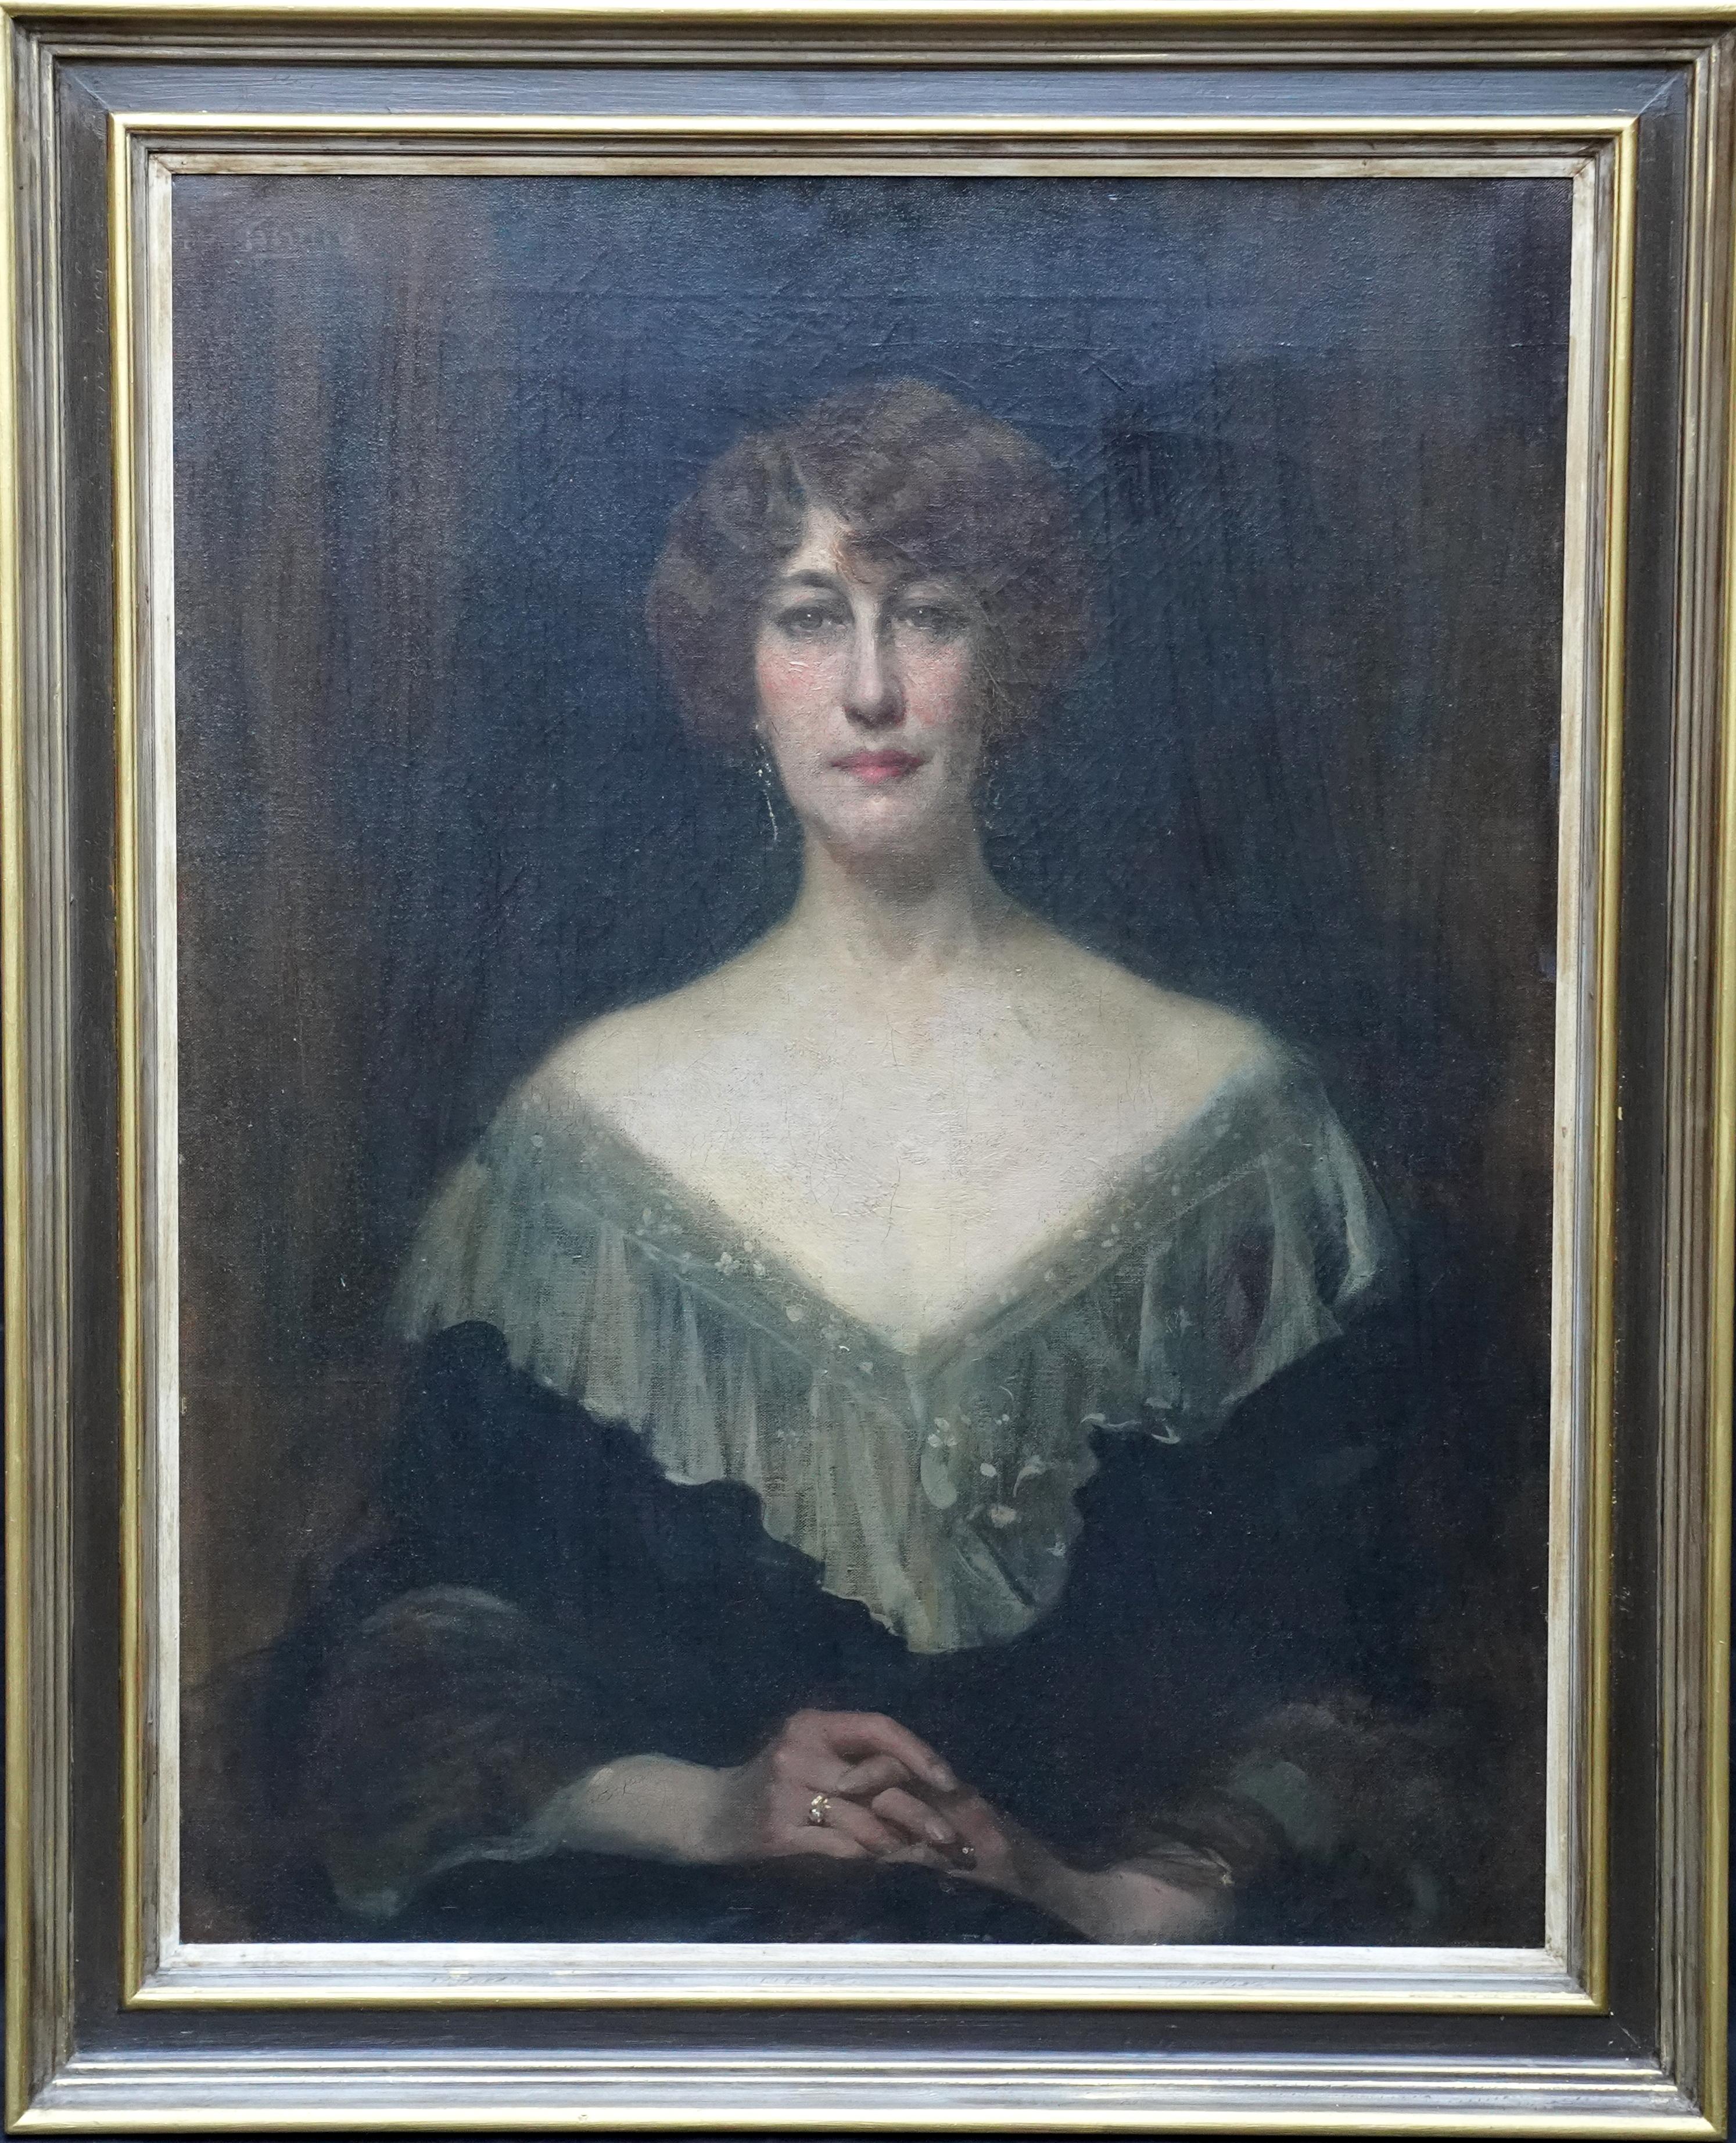 Unknown Portrait Painting – Emily Gertrude Lilias Muirhead – britisches edwardianisches Porträt-Ölgemälde 